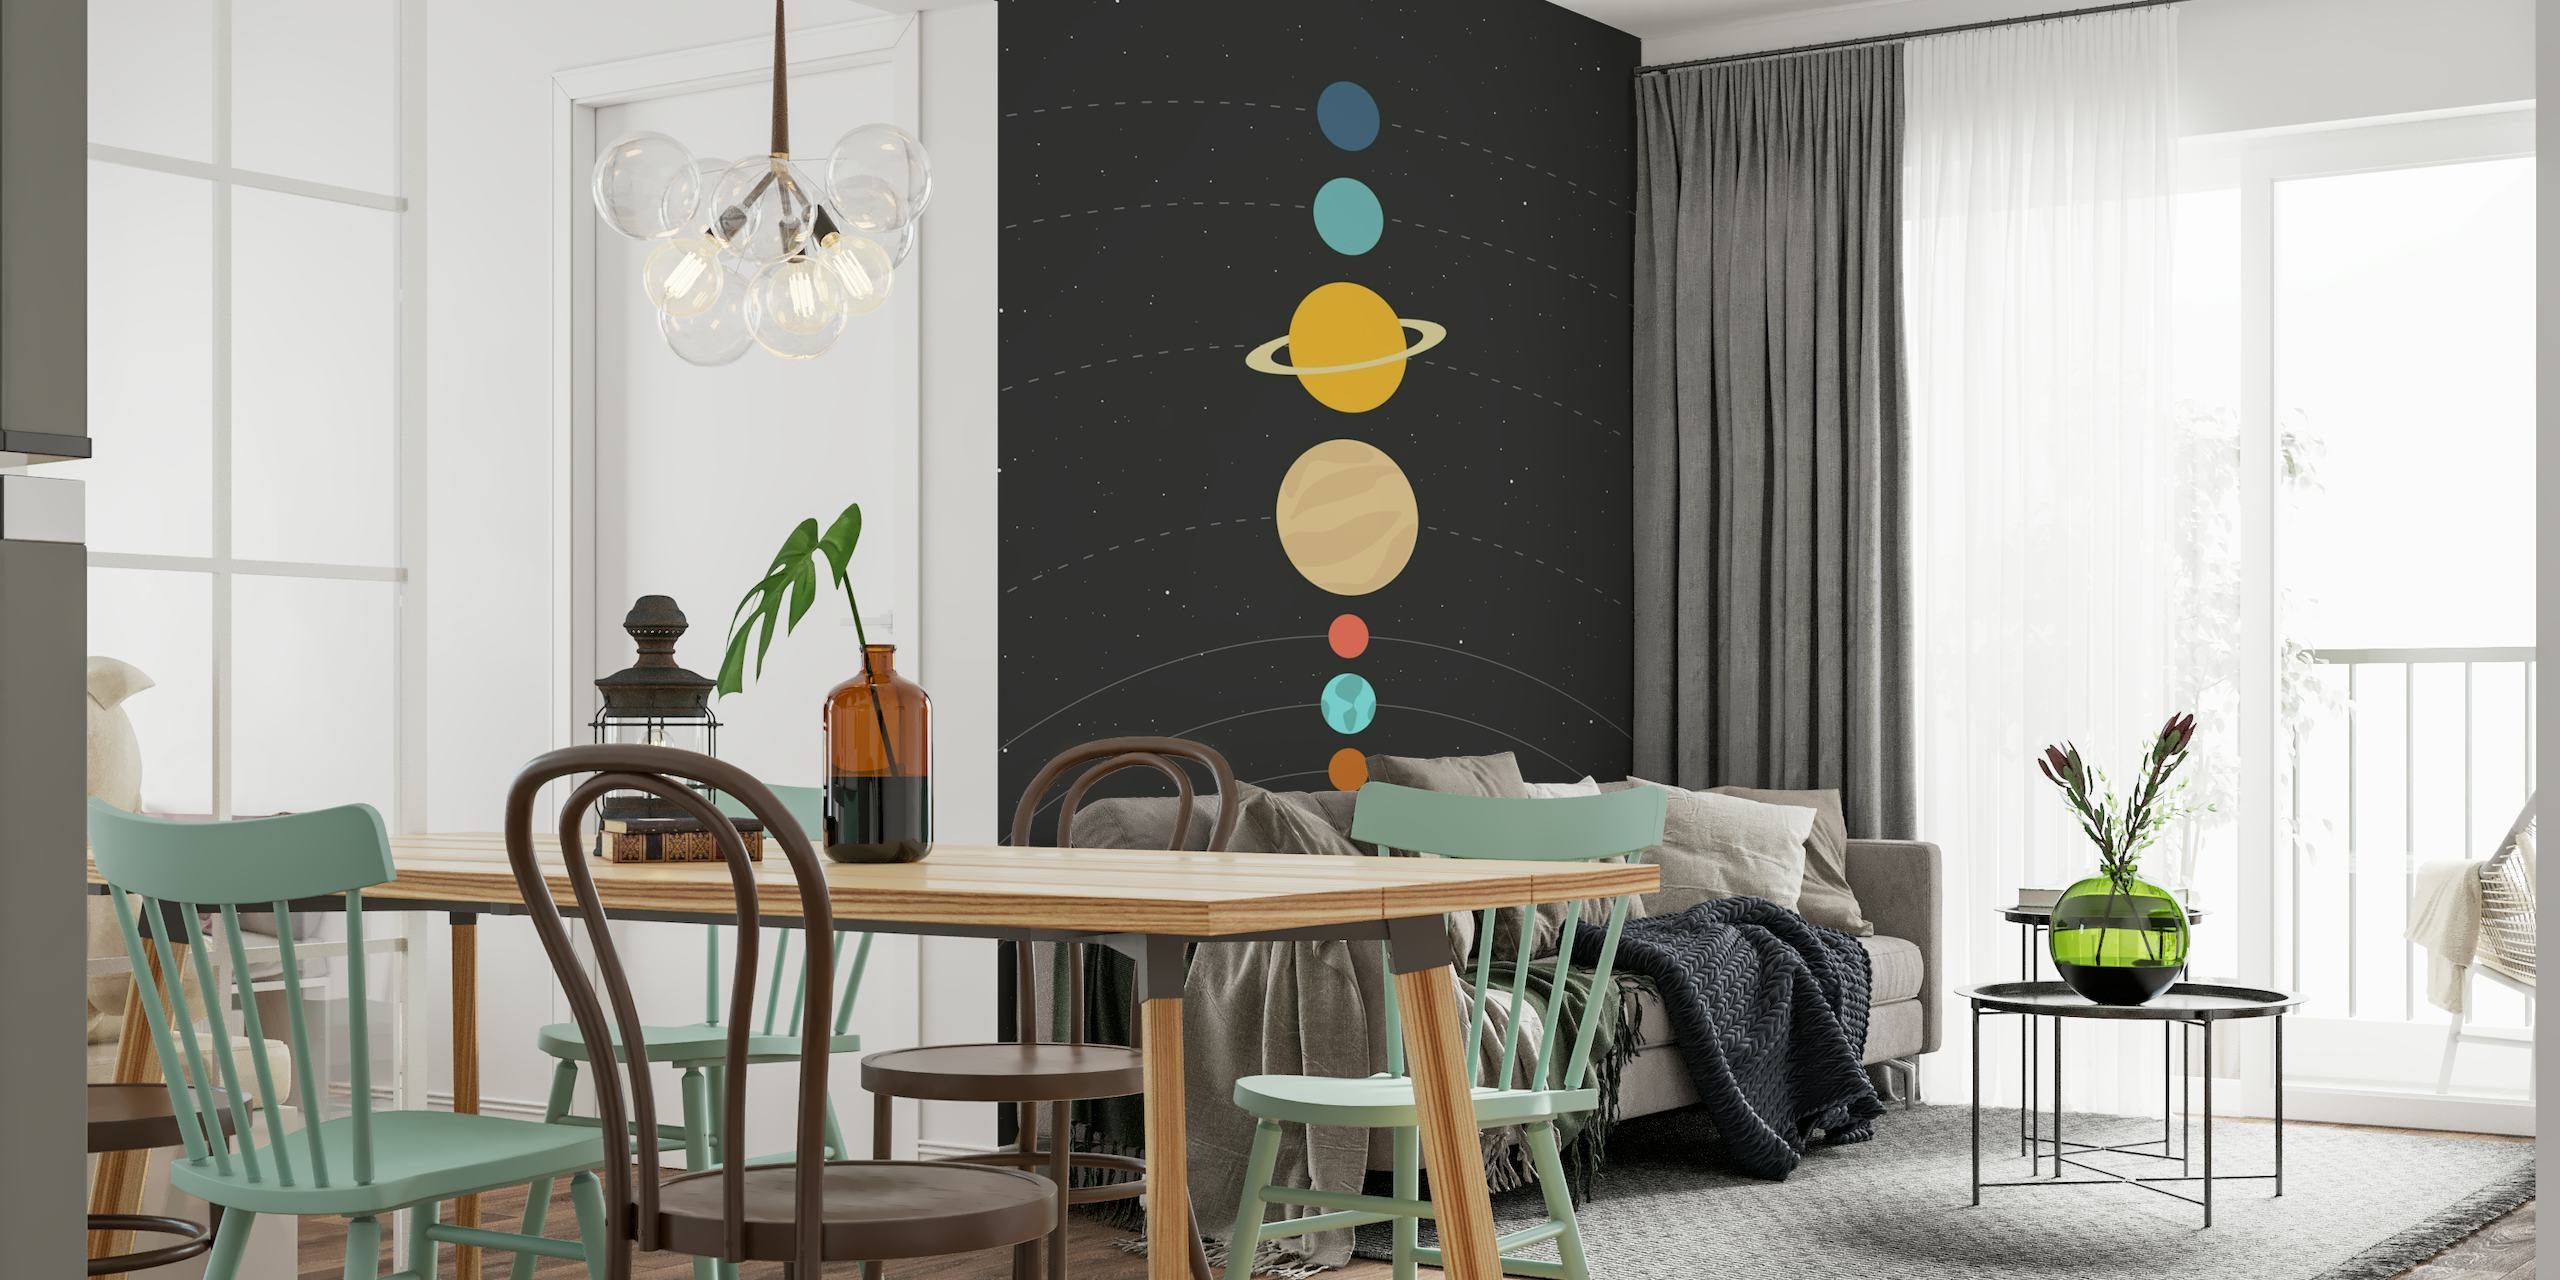 Solar System ArtPrInk behang